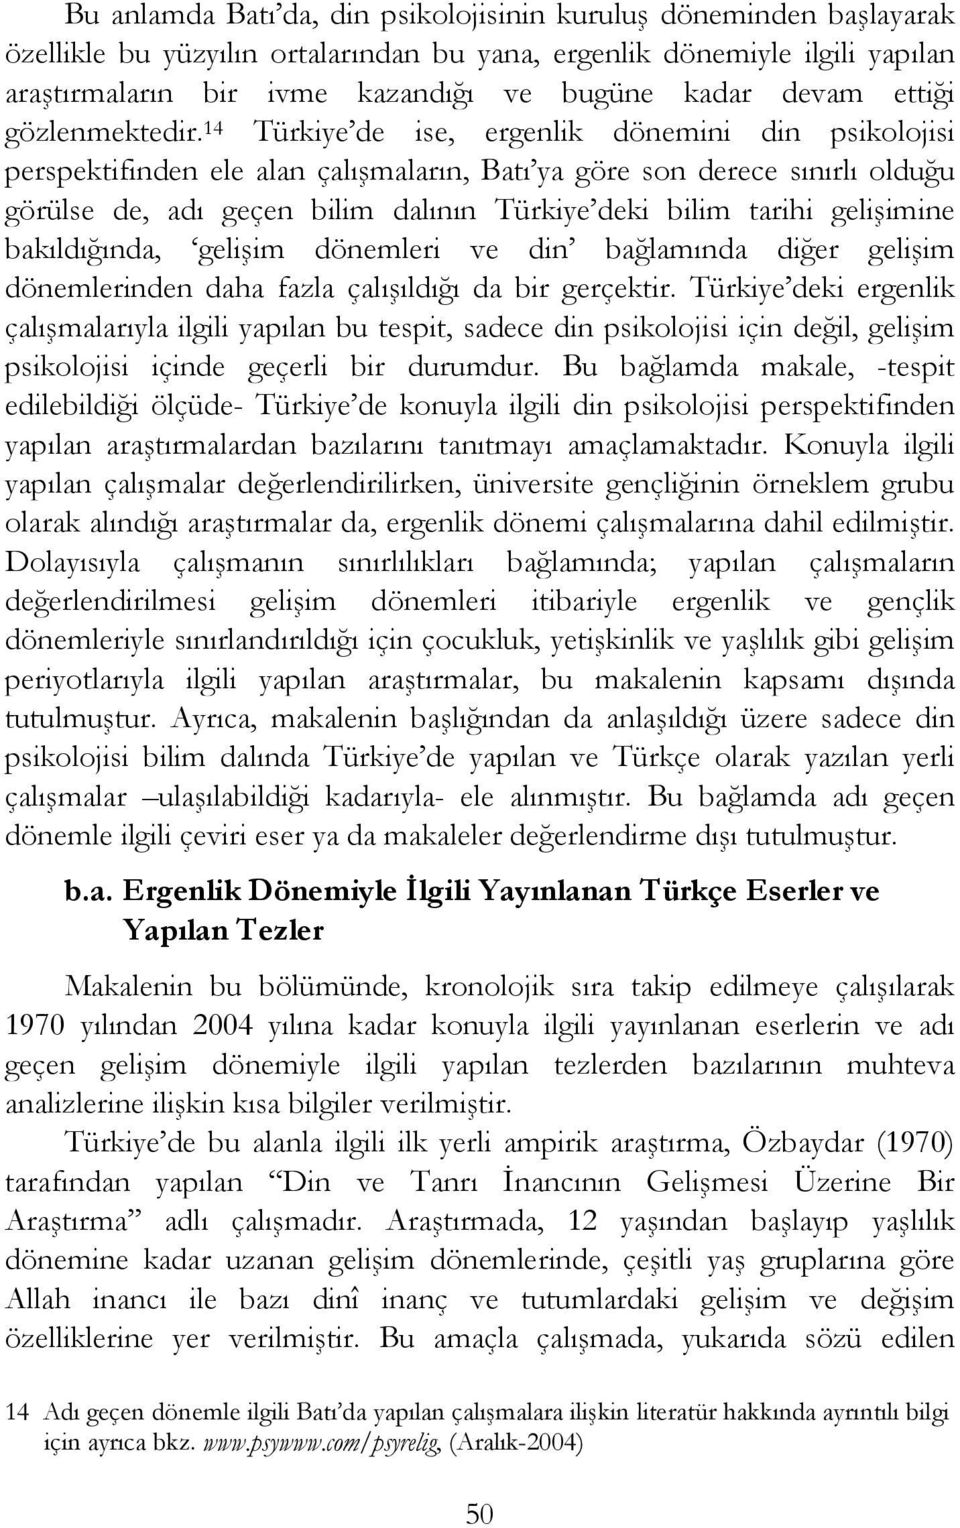 14 Türkiye de ise, ergenlik dönemini din psikolojisi perspektifinden ele alan çalışmaların, Batı ya göre son derece sınırlı olduğu görülse de, adı geçen bilim dalının Türkiye deki bilim tarihi